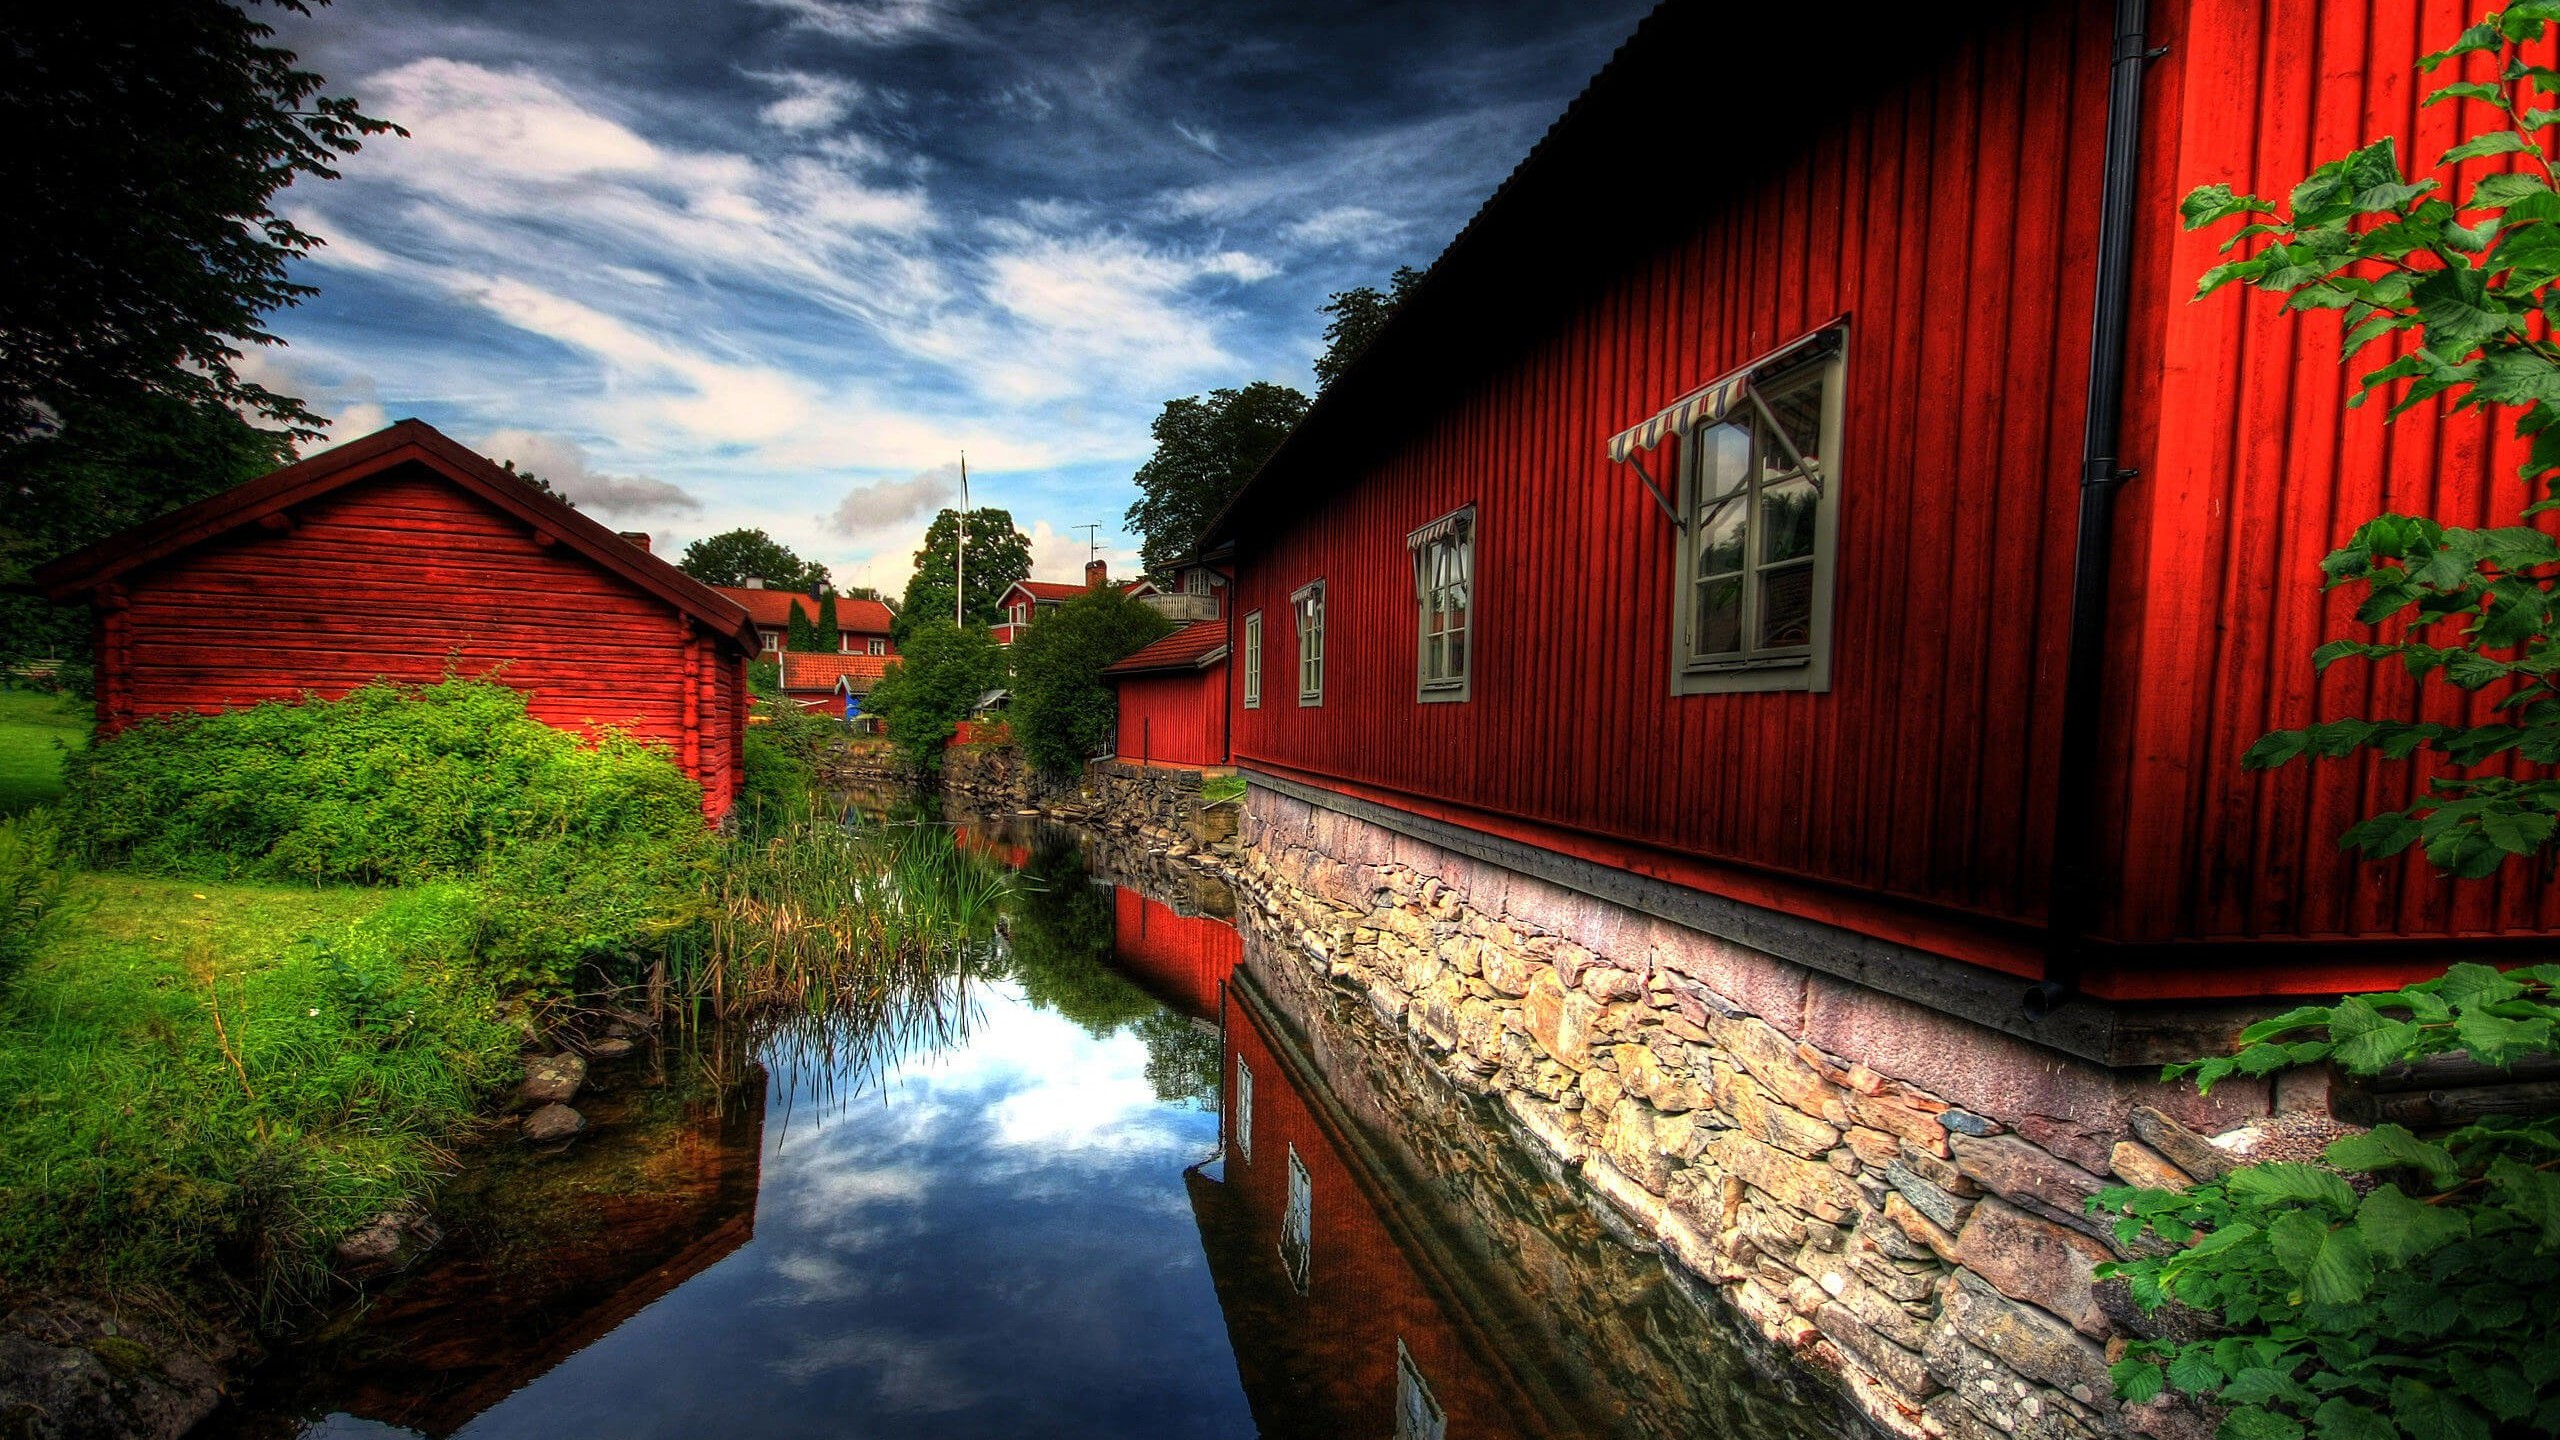 Red Village, Norberg, Sweden Wallpaper for Desktop 2560x1440